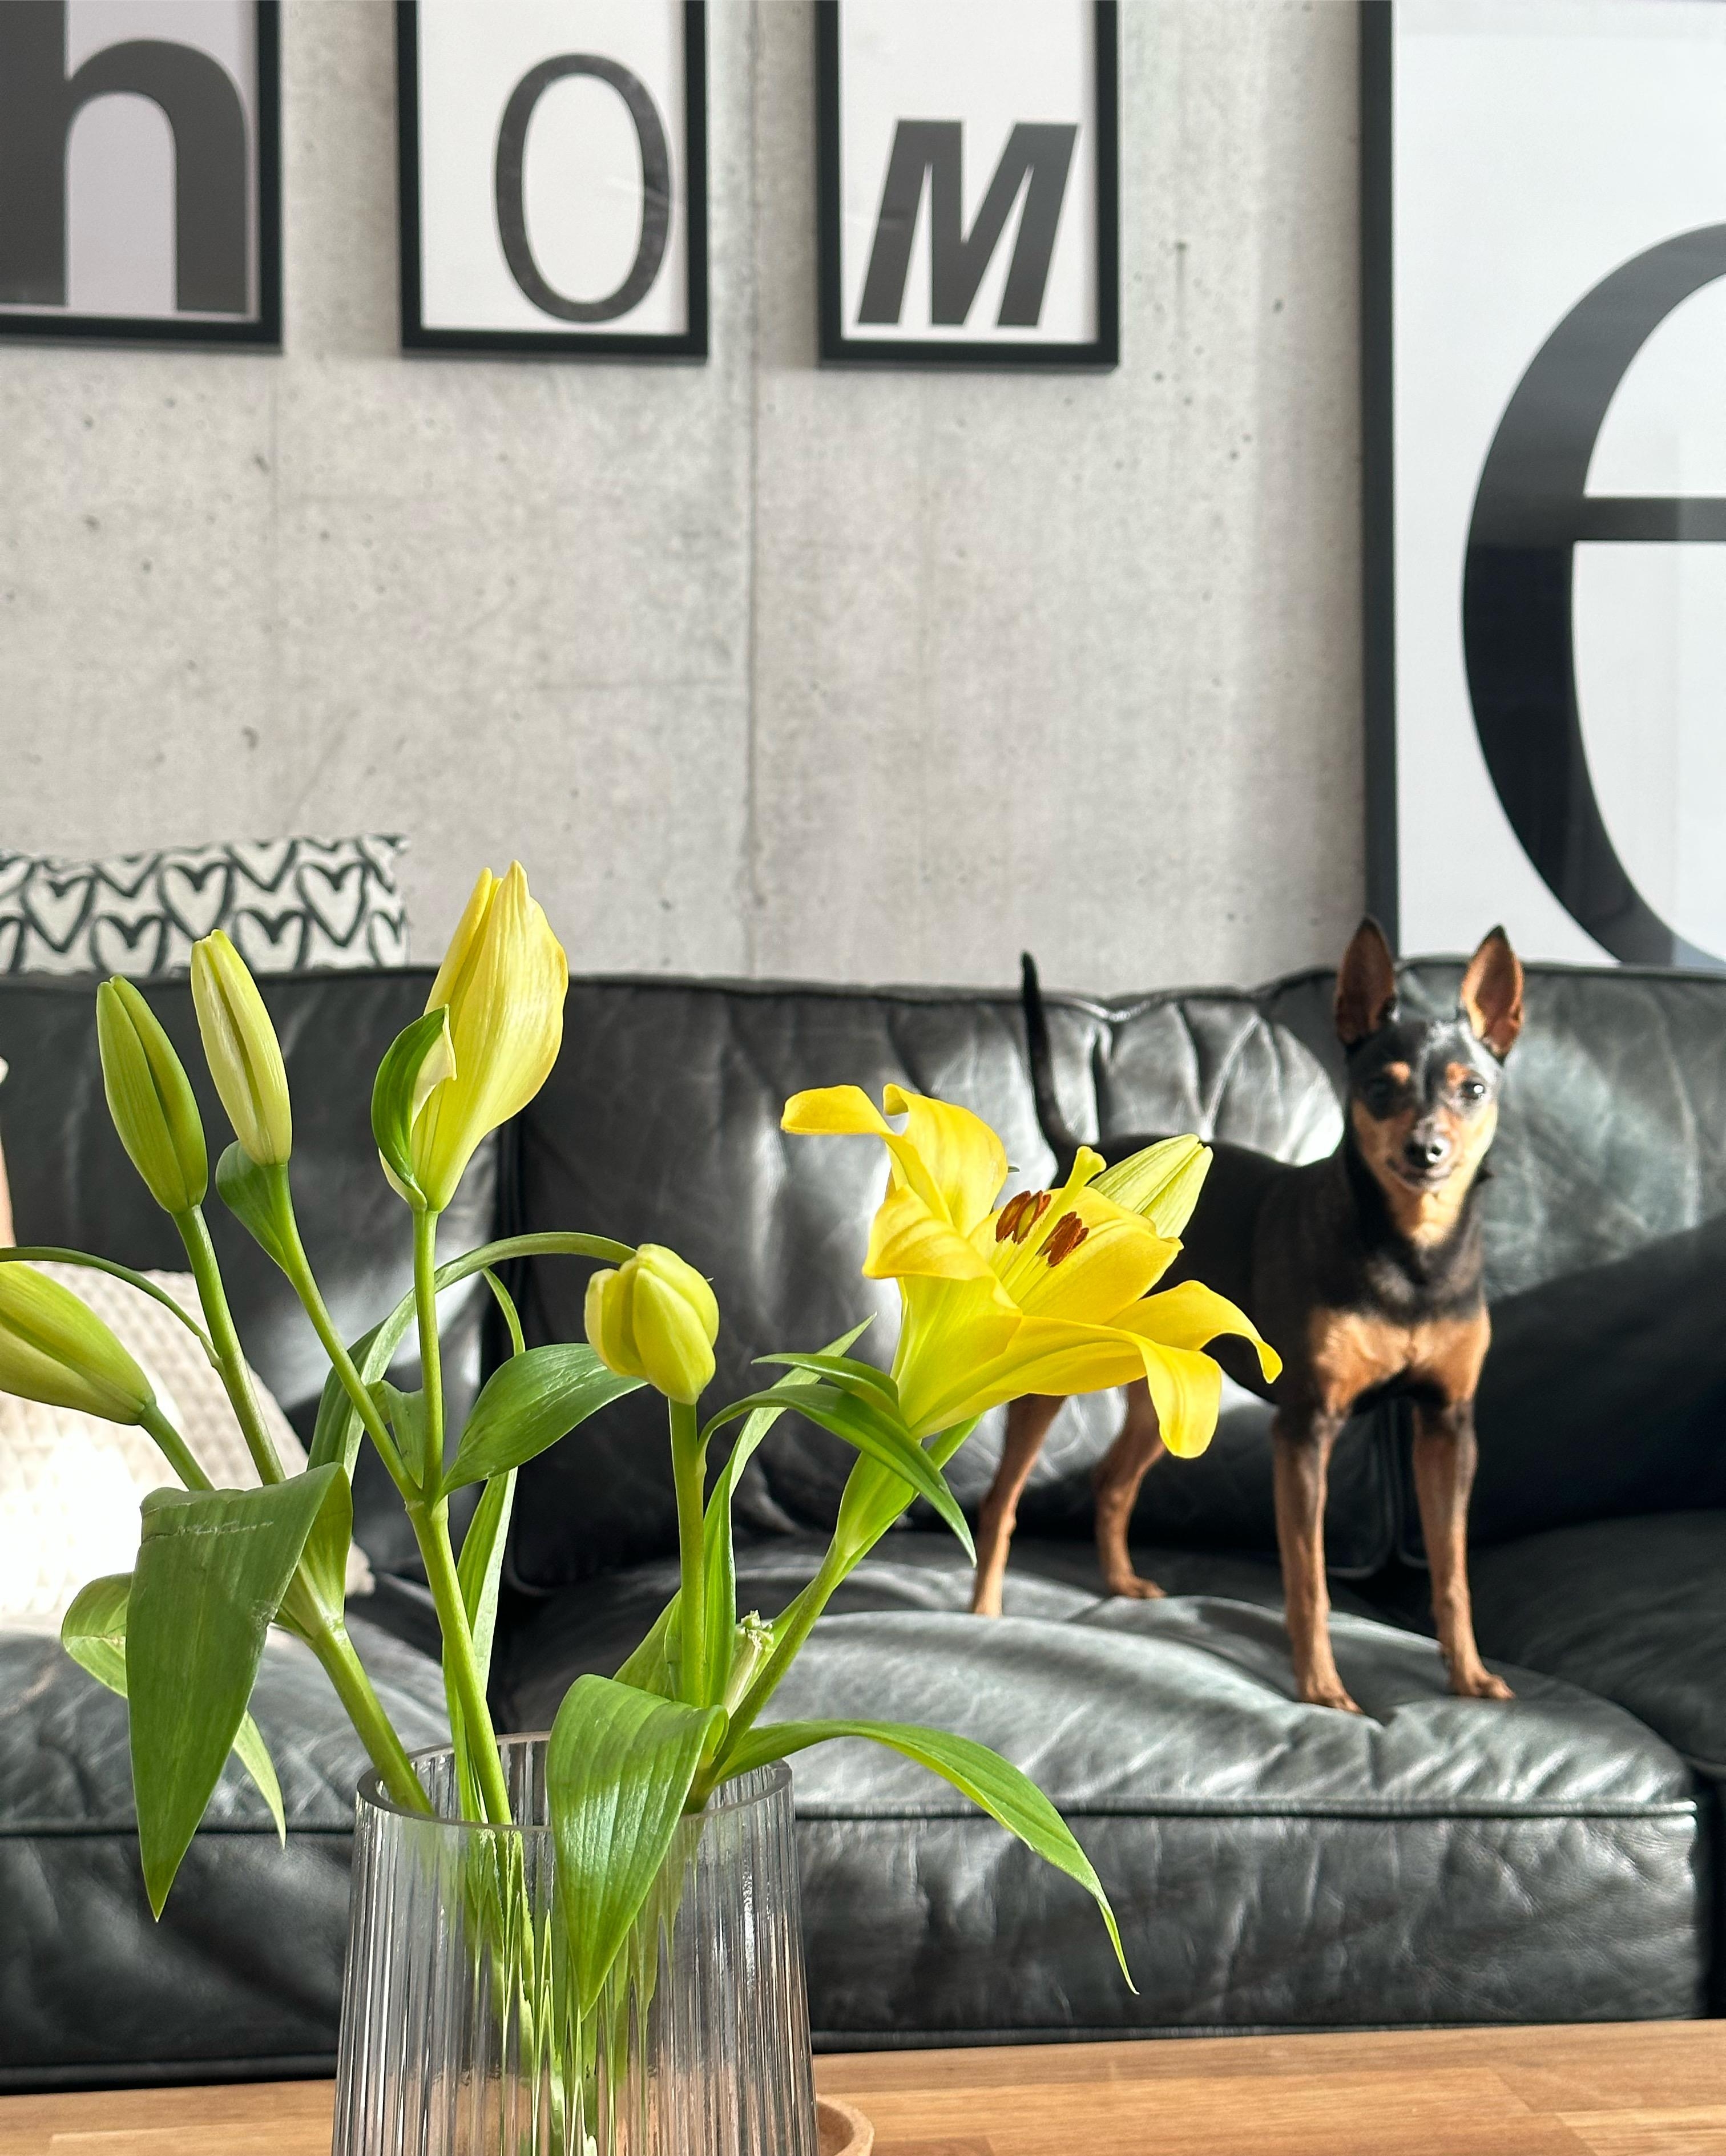 Lola 🐾 #wohnzimmer #hund #couch #gelb #beton #poster #walldecor #blumen #livingroom #home